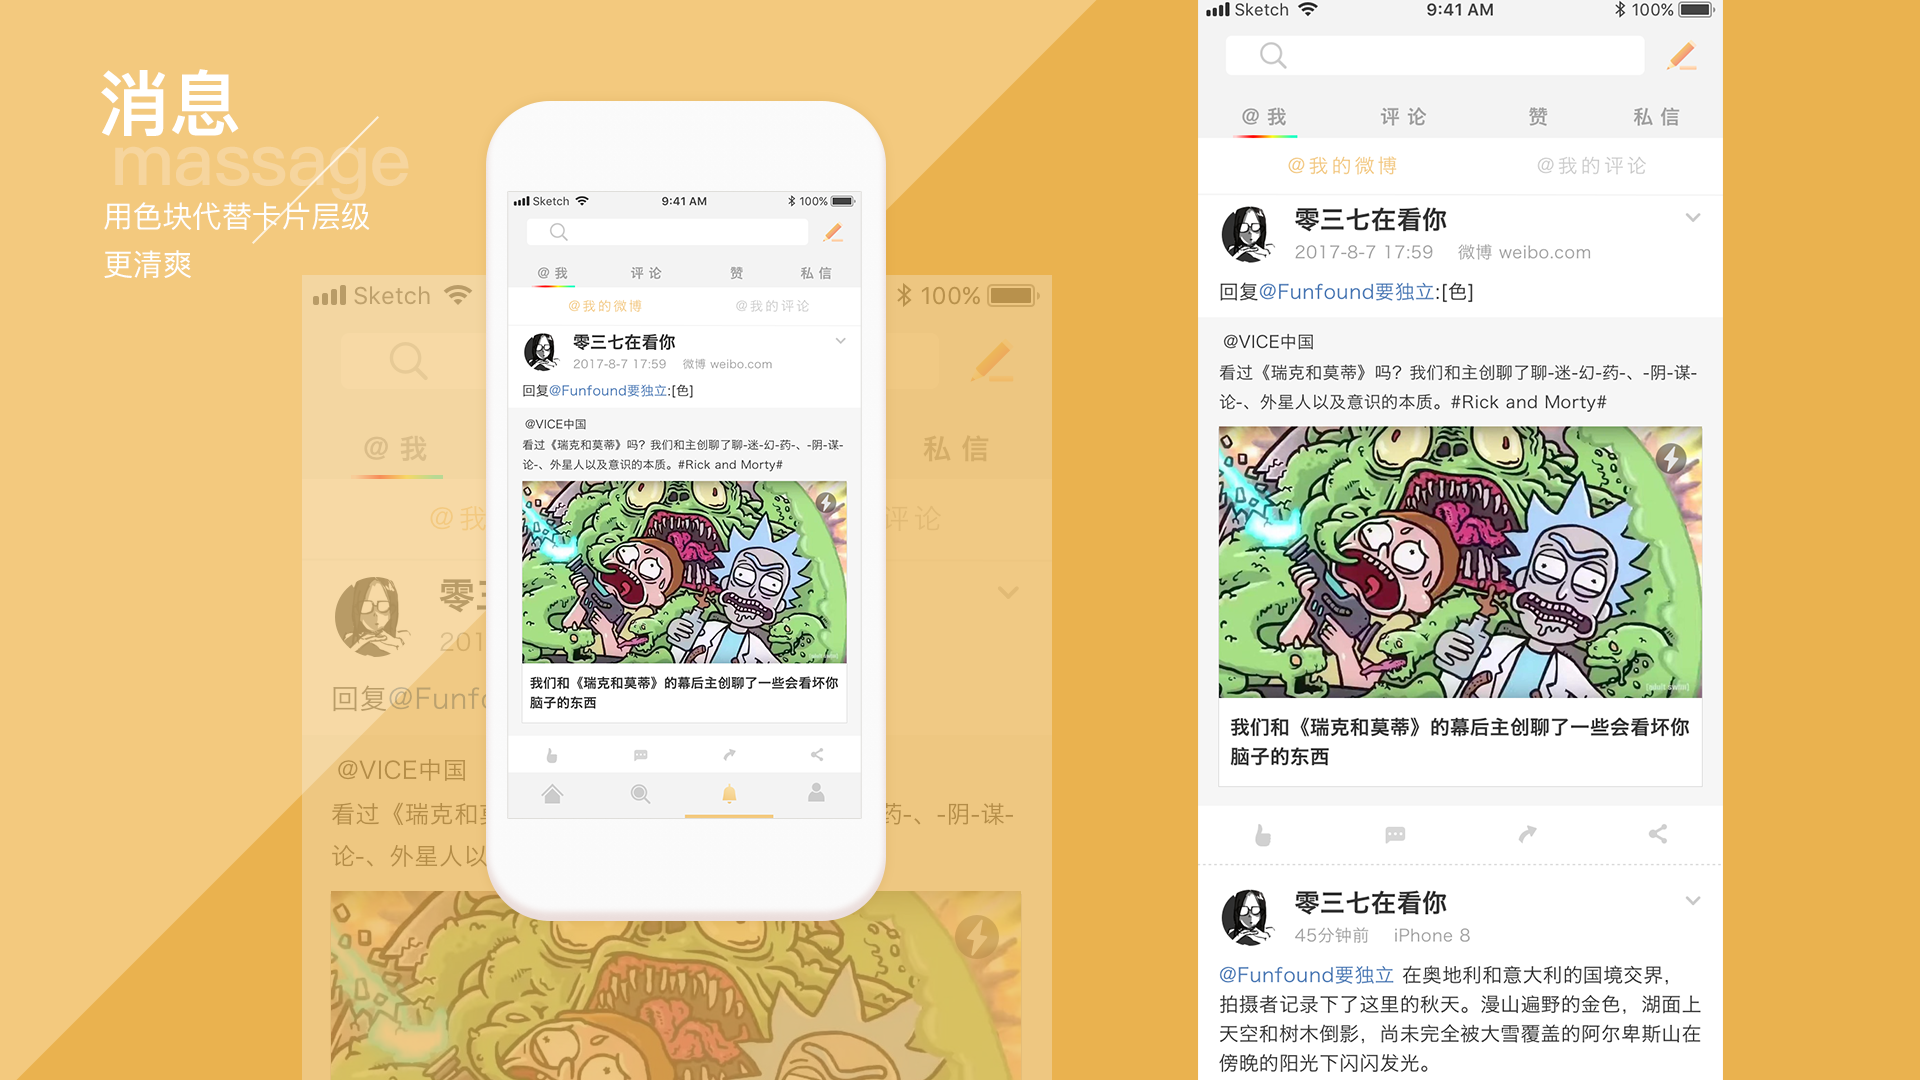 新浪微博封面图&模板 自制 BIGBANG - 堆糖，美图壁纸兴趣社区